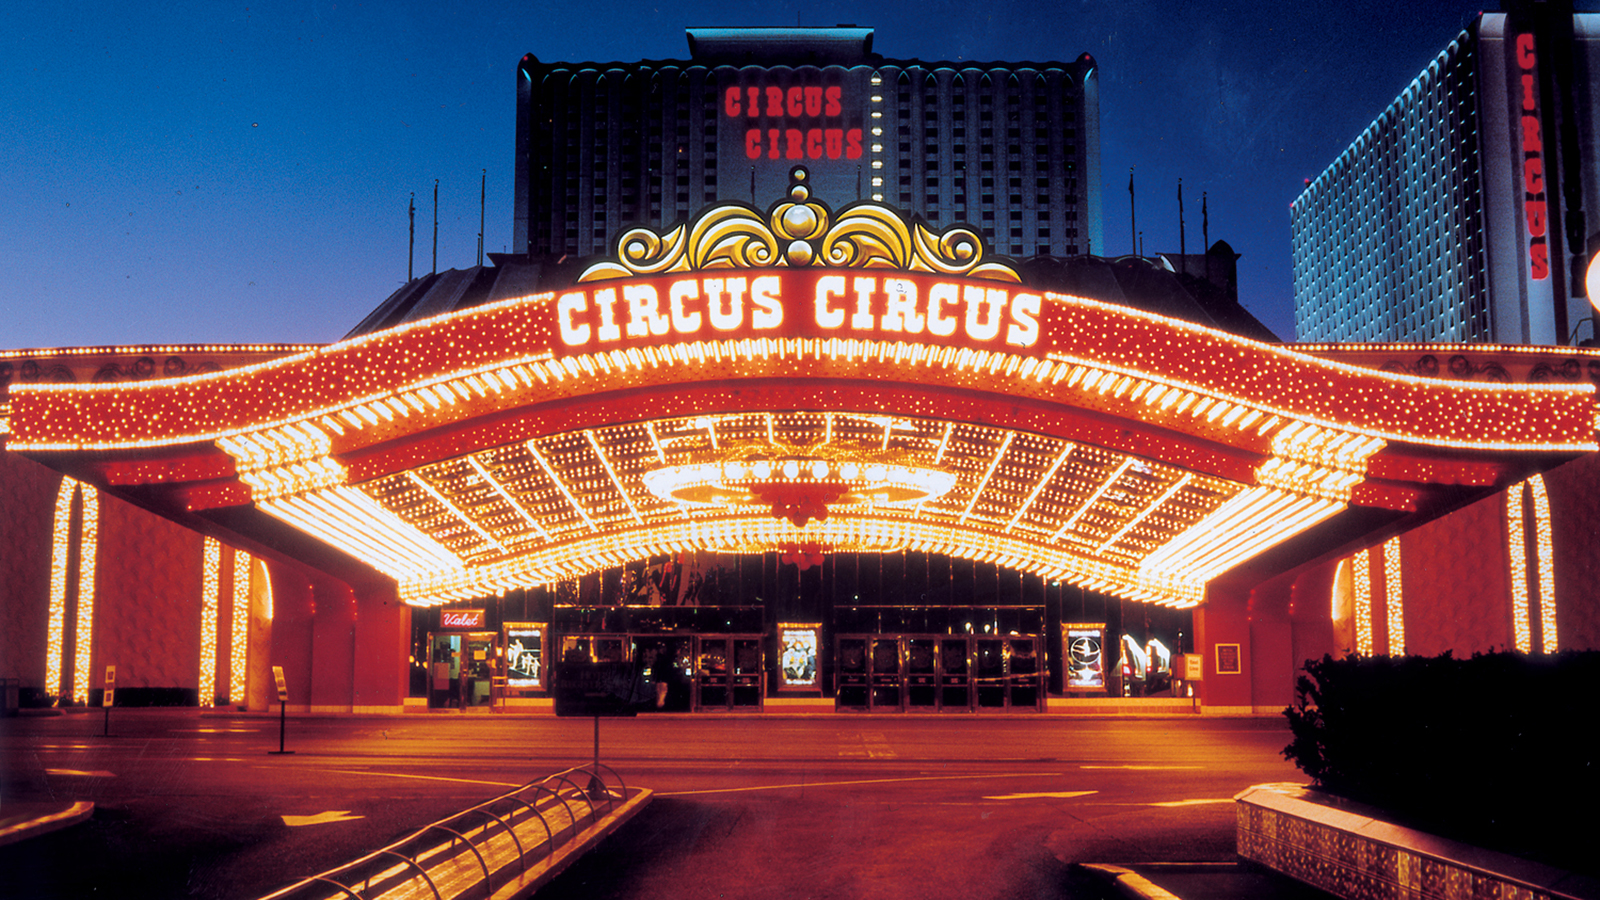 Fully illuminated Las Vegas's Circus Circus casino